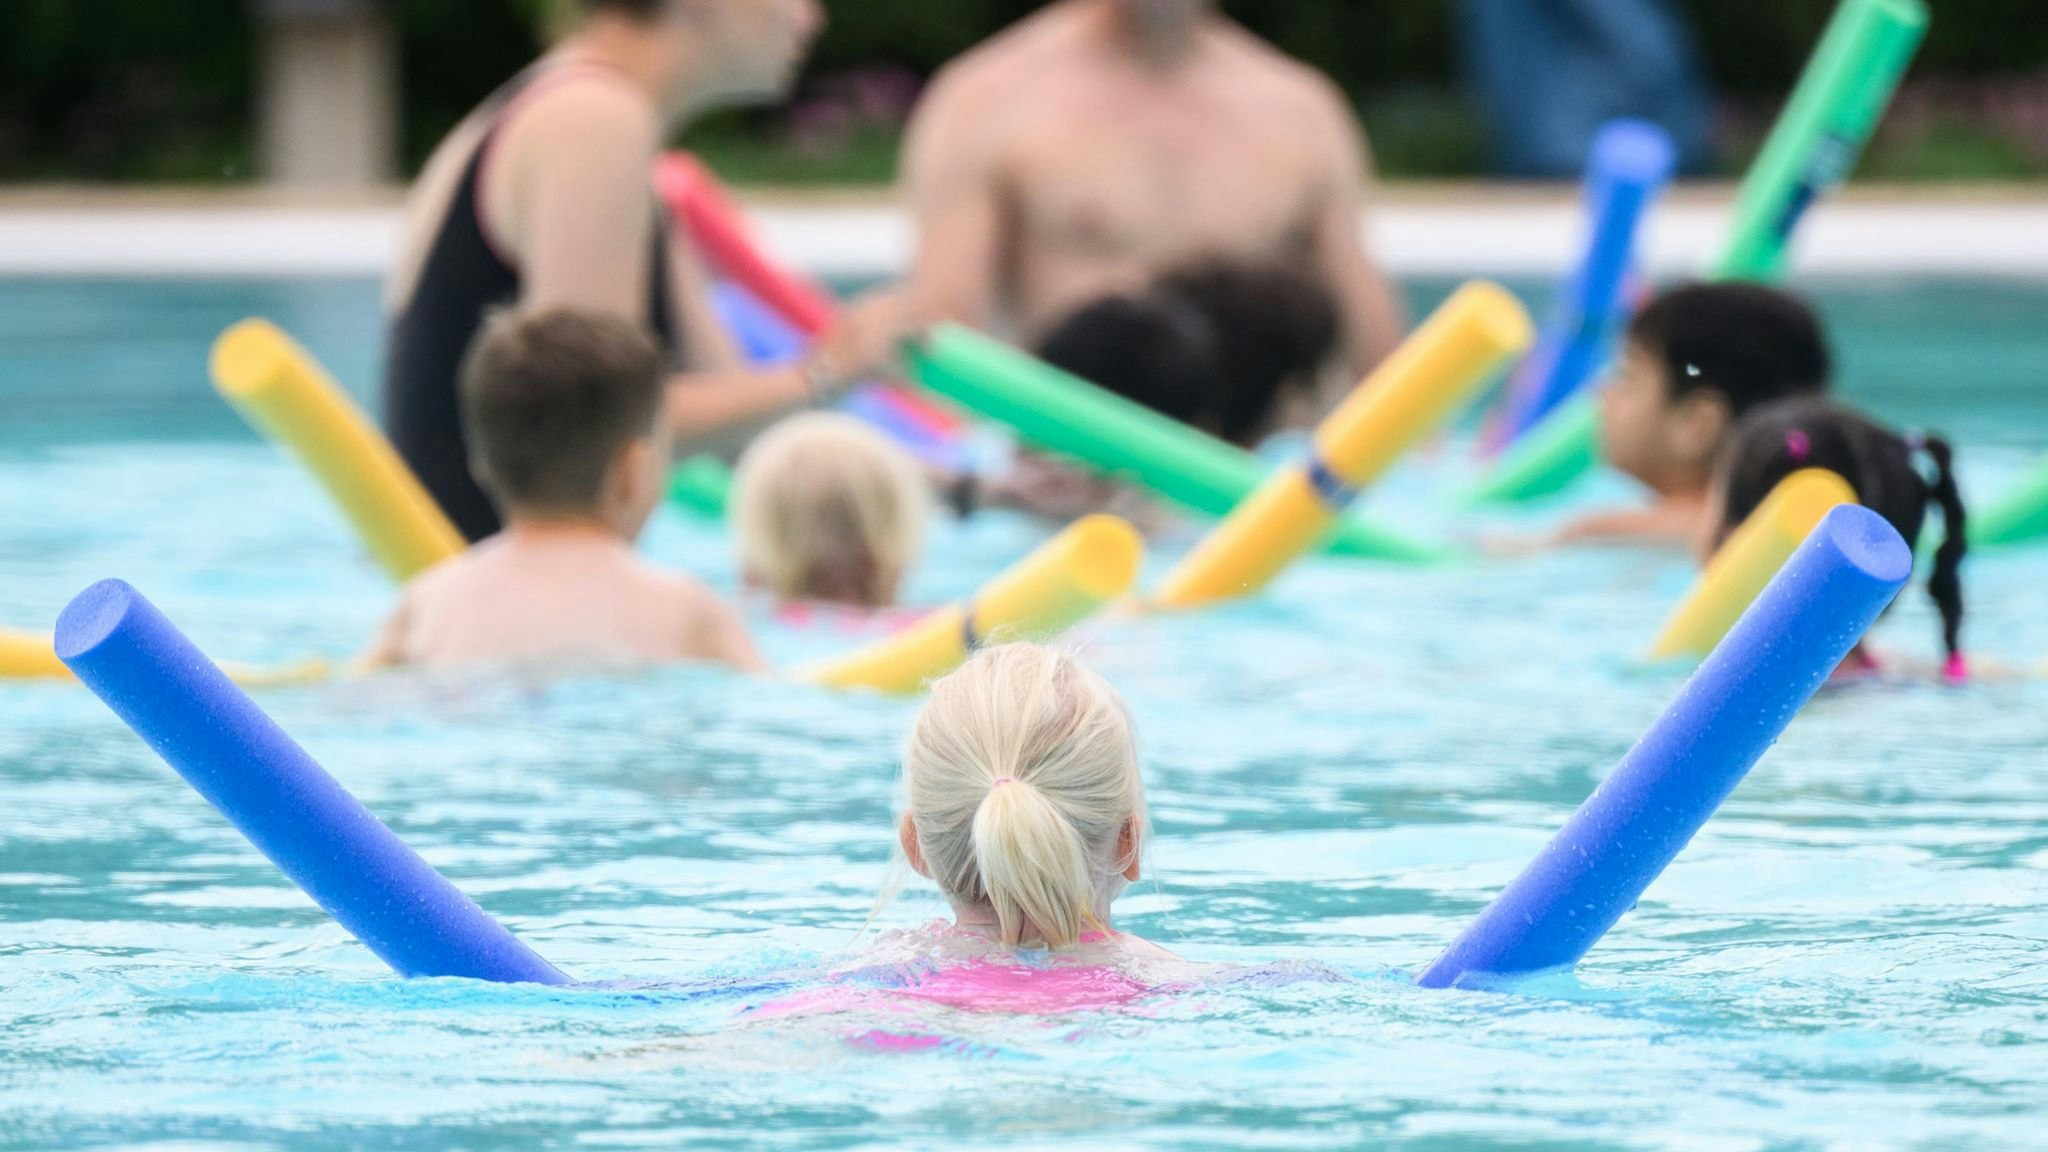 Die DLRG warnt davor, dass der Anteil der Nichtschwimmer unter Grundschülern steige. Foto: dpa/Stratenschulte